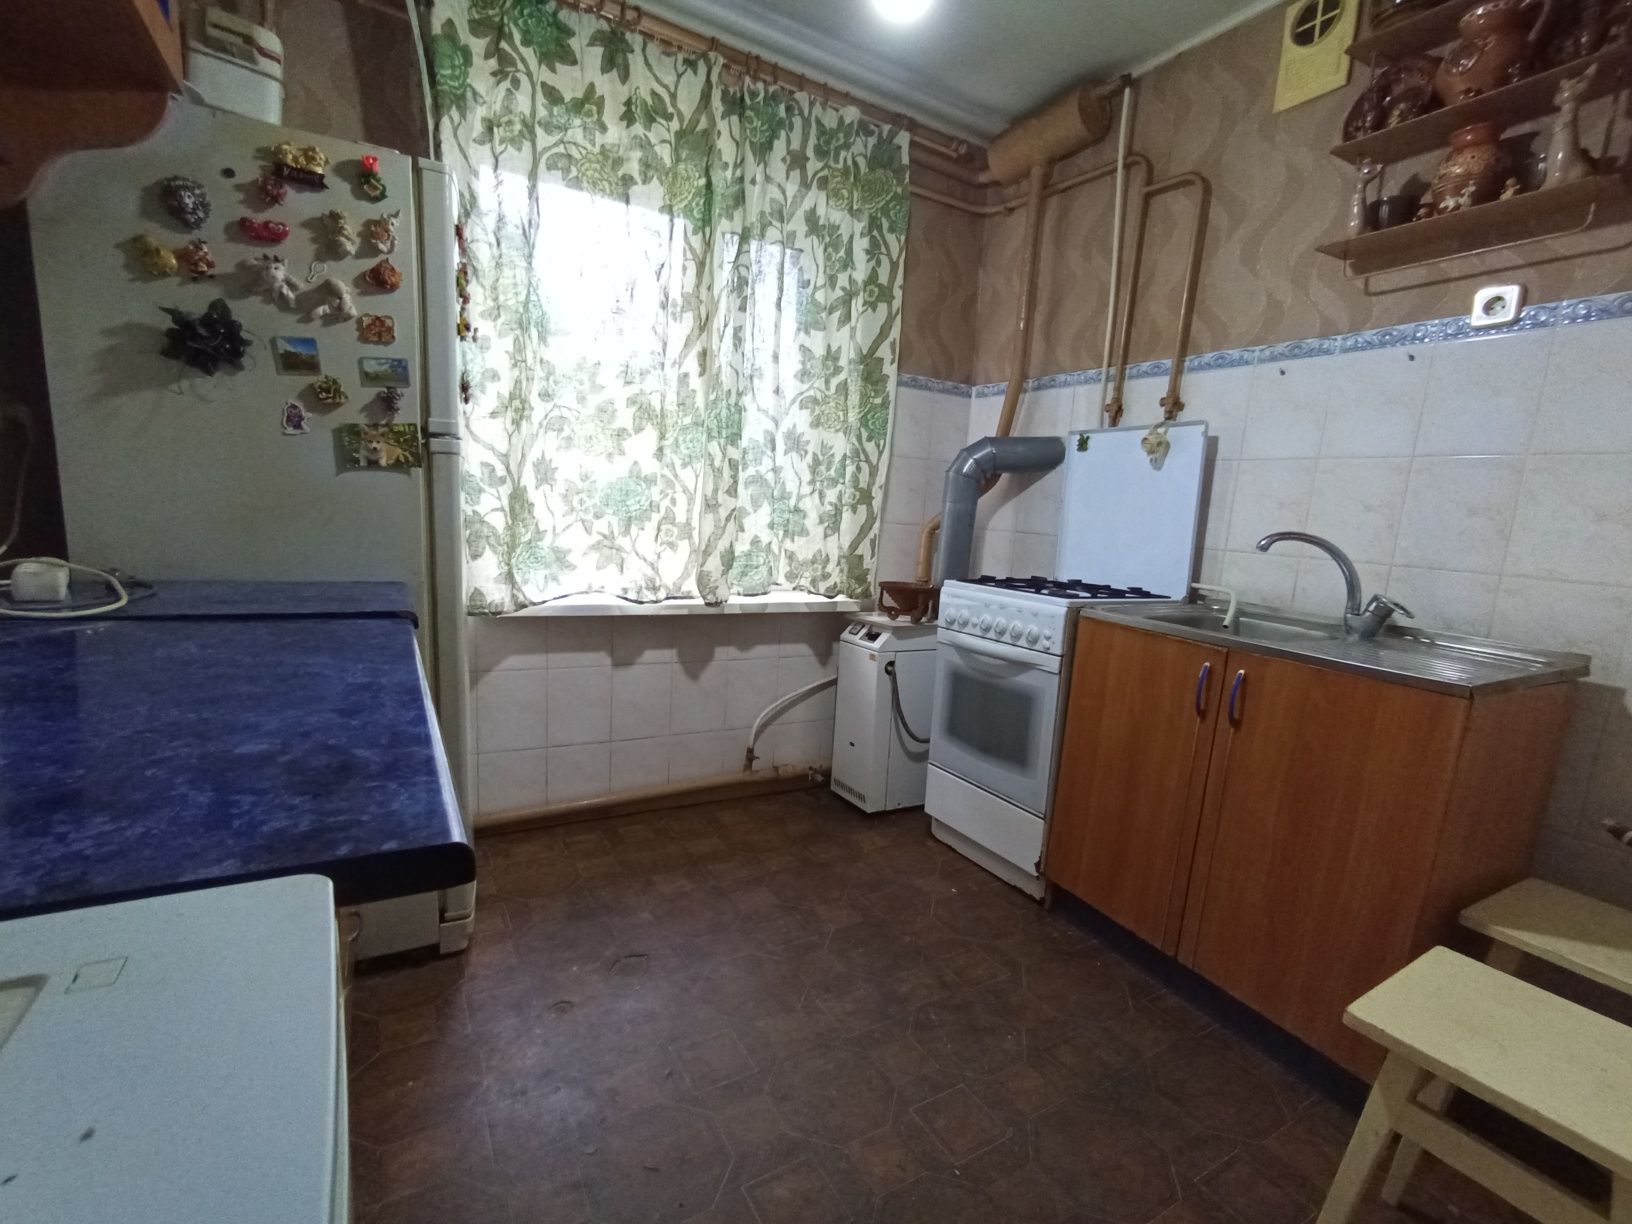 Продам квартиру в центре Беляевки,Одесская обл